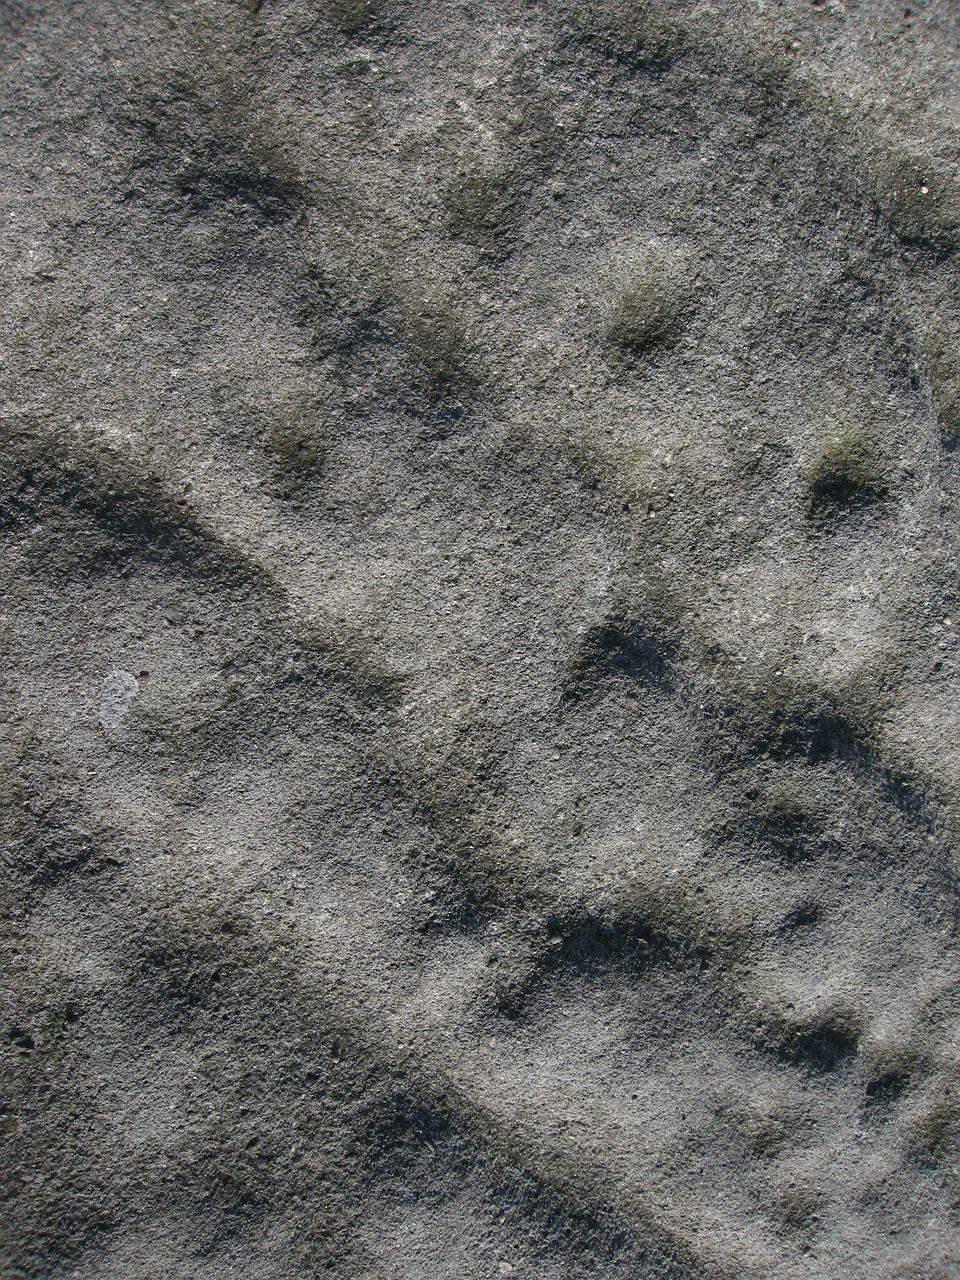 stone grey texture free photo